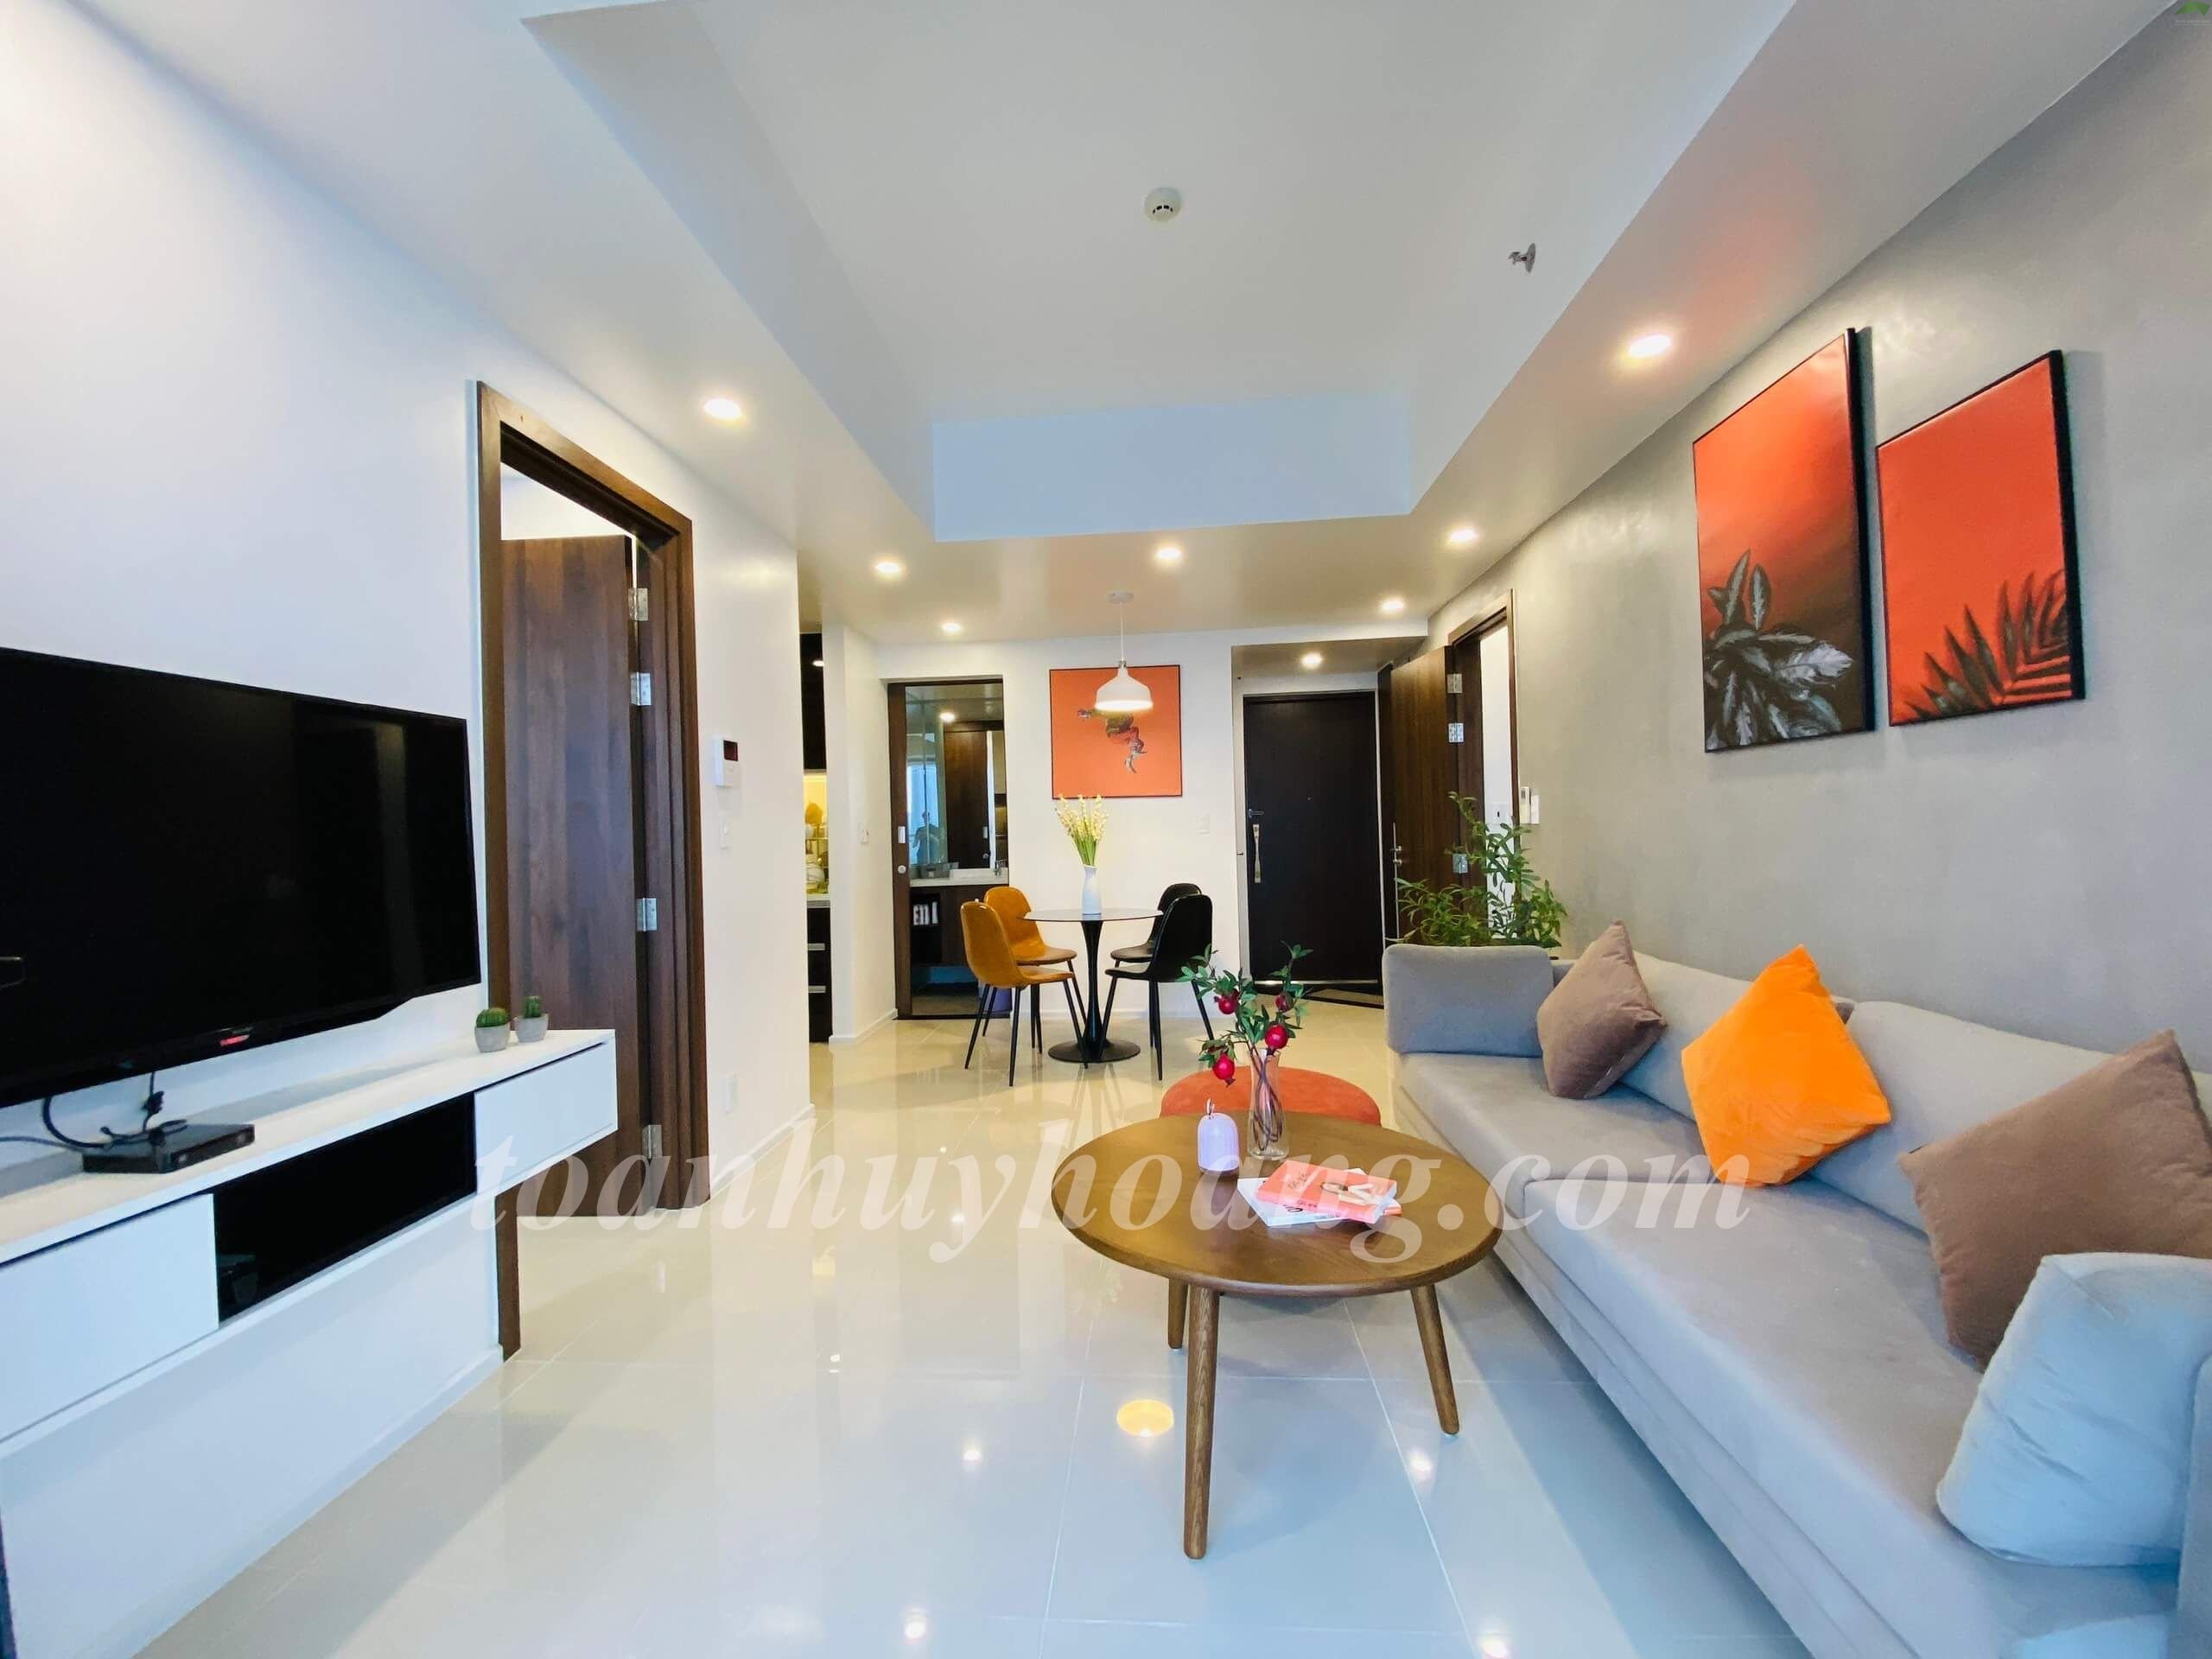 Chung cư Hiyori Garden là một trong những chung cư cao cấp tại Hà Nội với nội thất đẹp tuyệt vời. Hãy xem hình ảnh để chiêm ngưỡng những góc phòng đầy cảm hứng và thiết kế đẳng cấp trong nội thất của căn hộ.